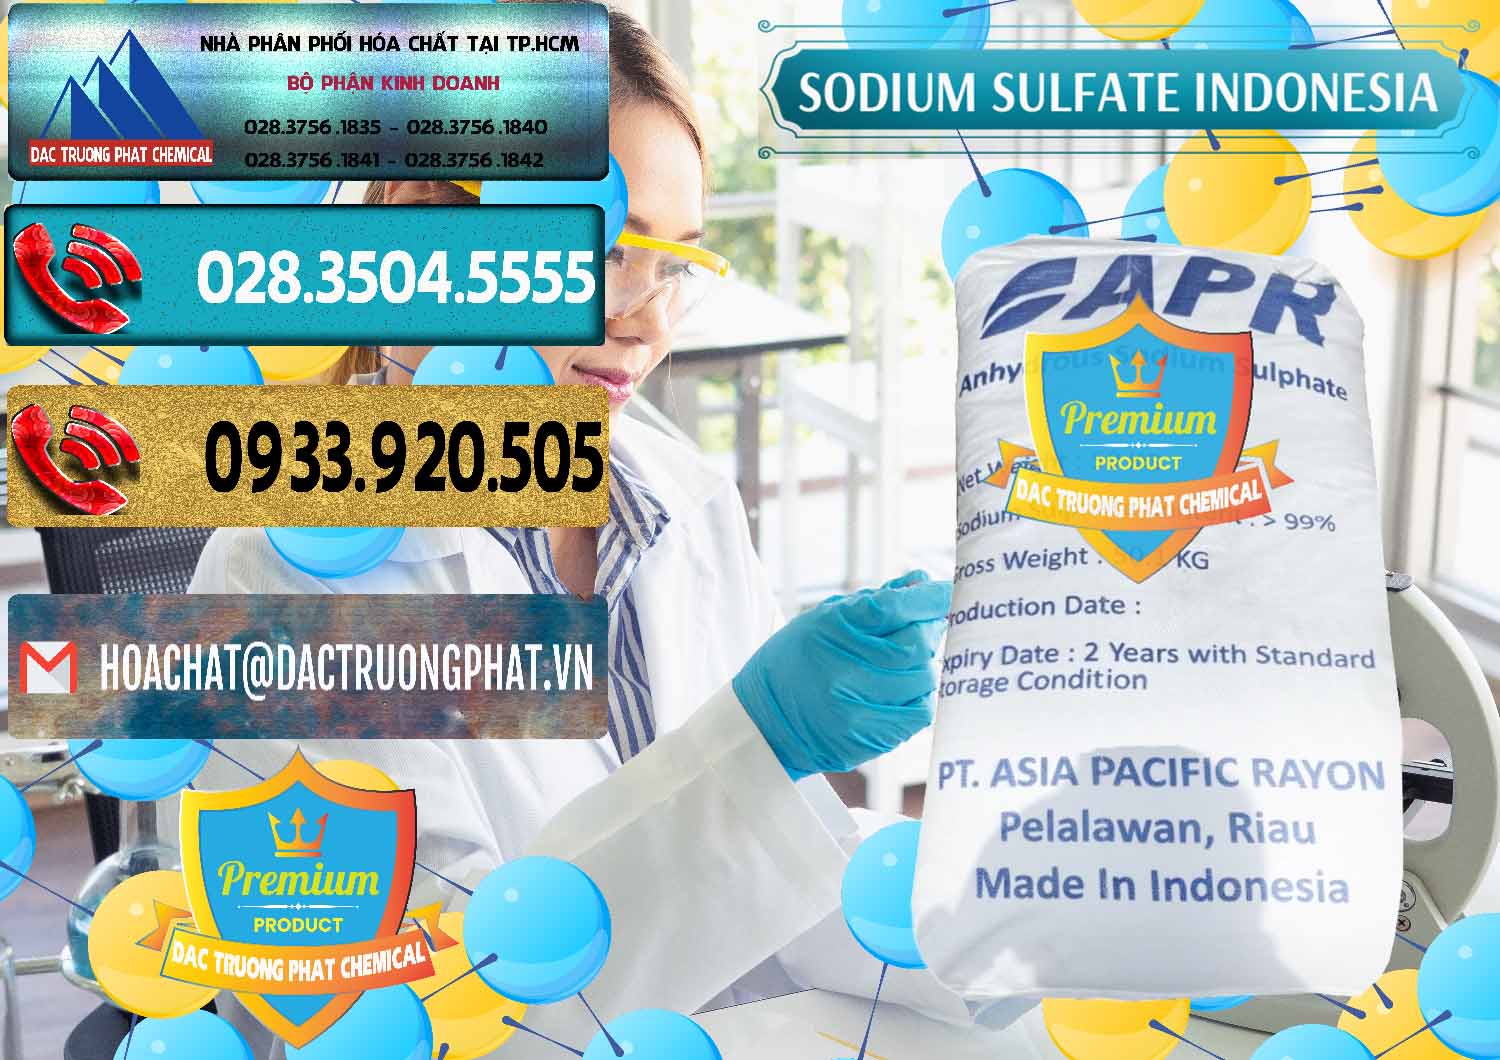 Công ty chuyên phân phối và bán Sodium Sulphate - Muối Sunfat Na2SO4 APR Indonesia - 0460 - Kinh doanh - cung cấp hóa chất tại TP.HCM - hoachatdetnhuom.com